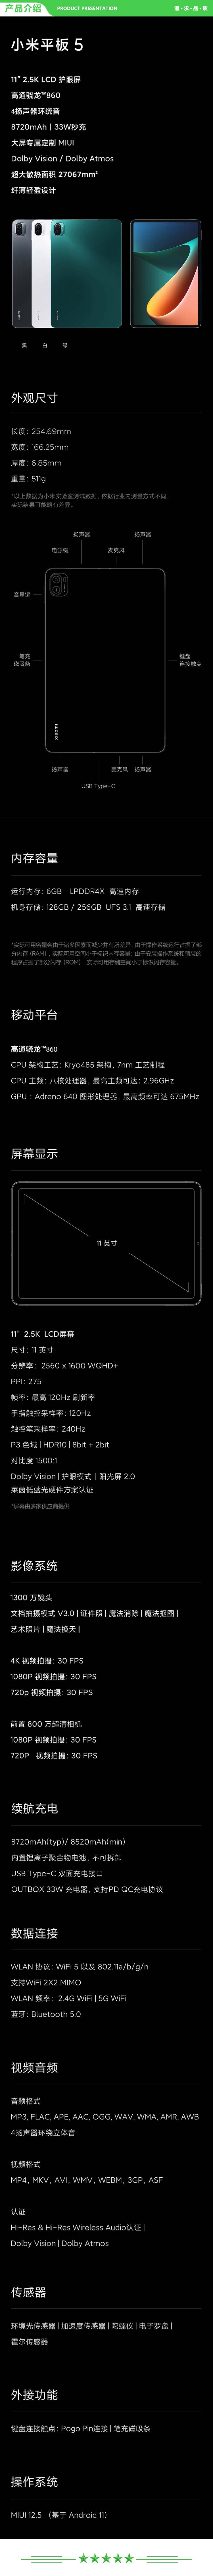 小米 xiaomi 平板5 平板电脑（11英寸2.5K高清 120Hz 骁龙860 6G+128GB 33W快充 杜比影音娱乐办公 绿色）.jpg